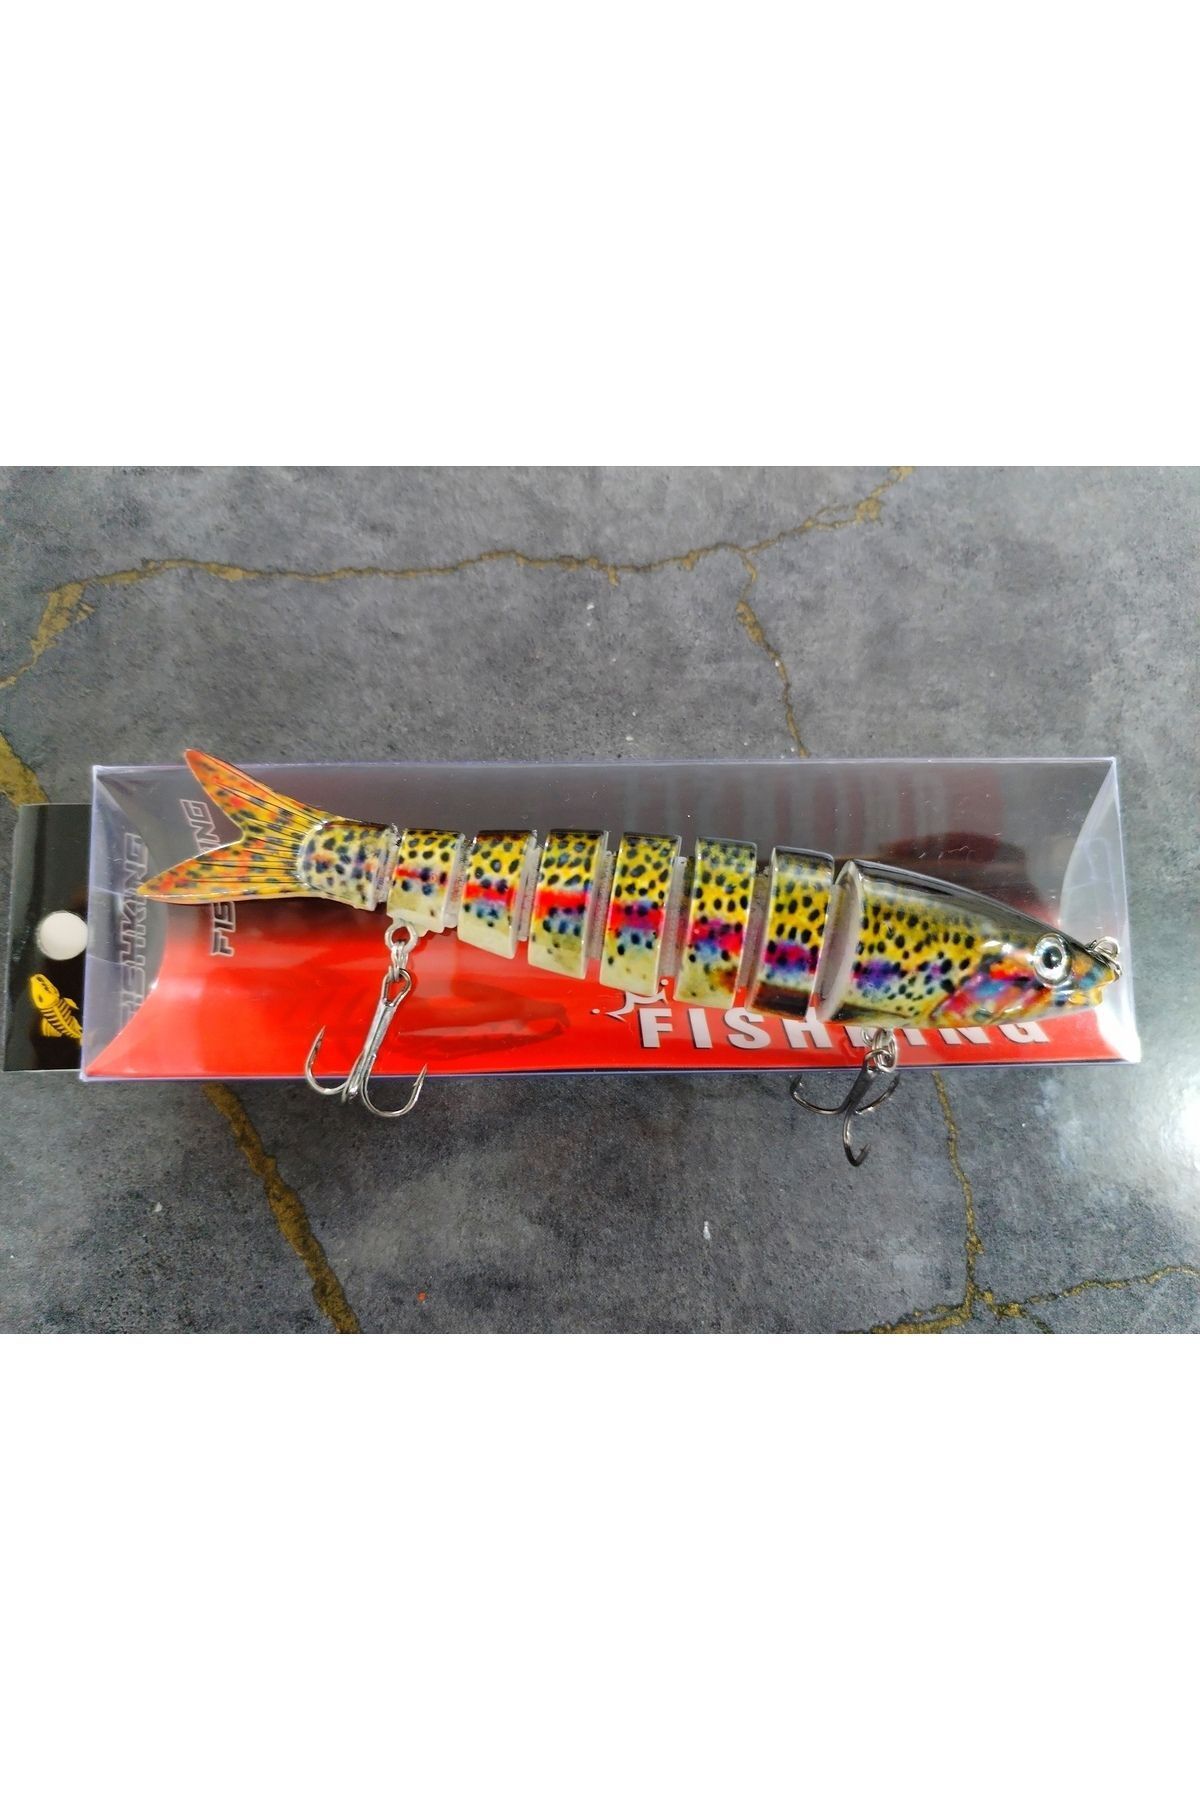 Fish FishKing 13 cm 20 gram 6 Eklemli 3d Görünümlü Rapala Sahte Balık Suni Yem Turna Sudak Levrek sahtesi